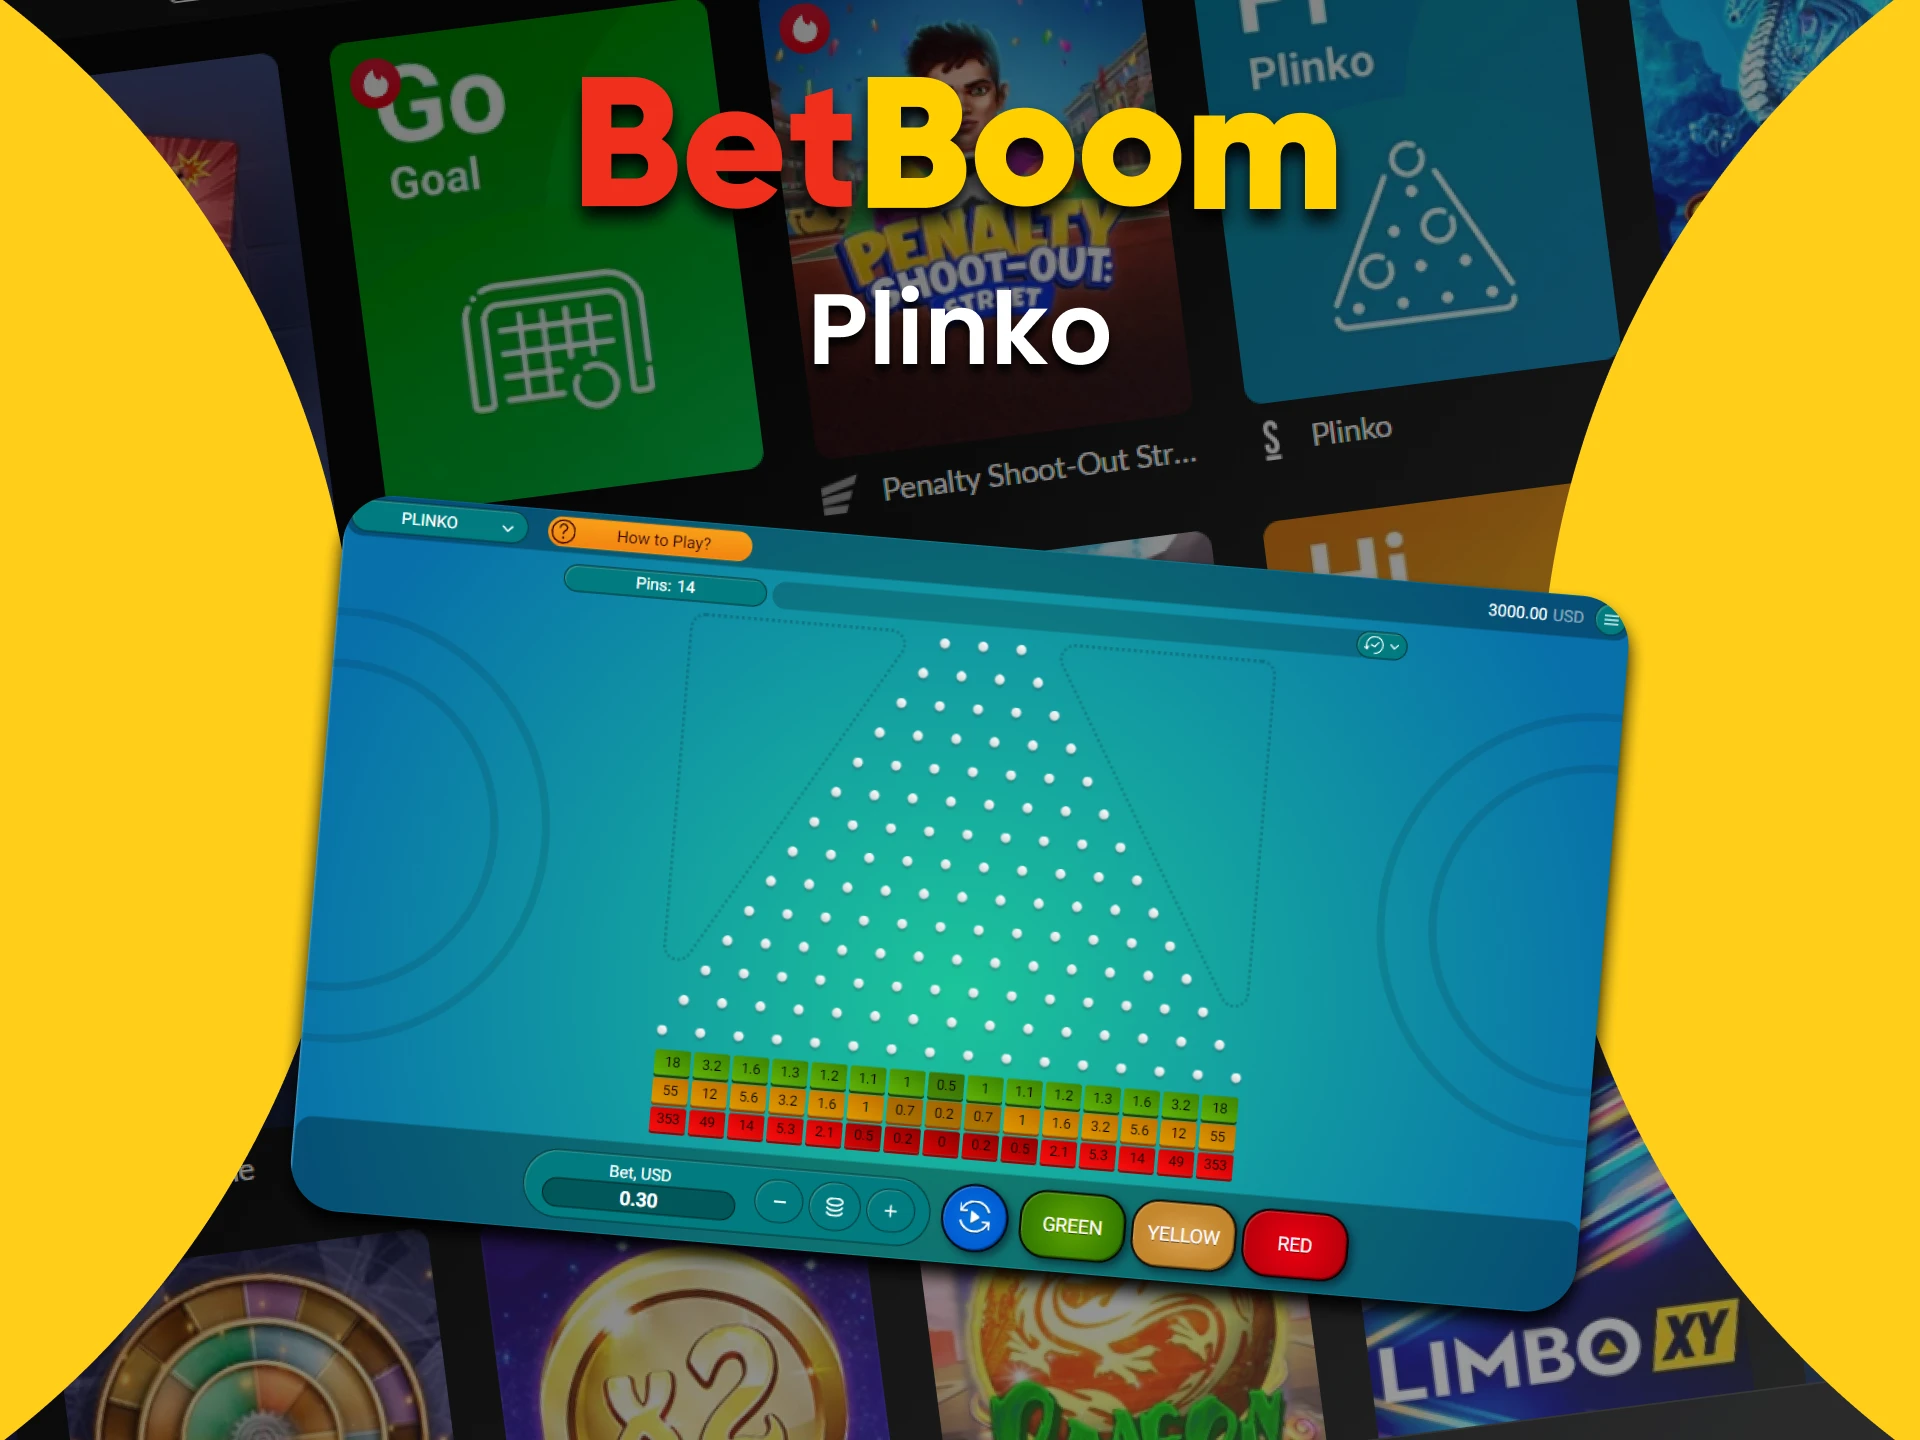 Para jogar Plinko, escolha a seção de jogos rápidos no BetBoom.